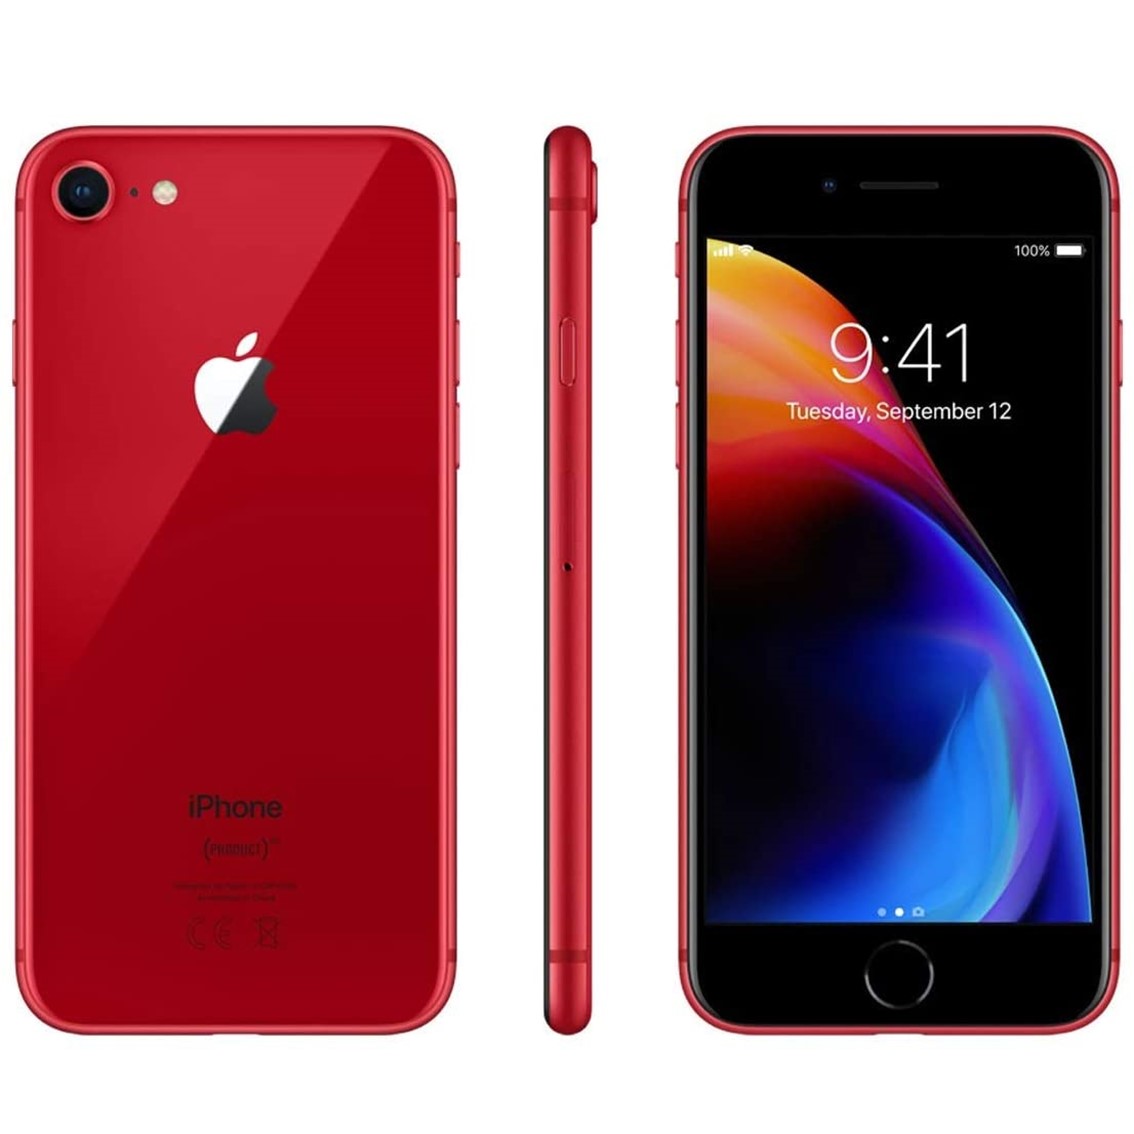 Telefono movil smartphone reware apple iphone 8 256gb red - 4.7pulgadas - lector huella - reacondicionado - refurbish - grado a+